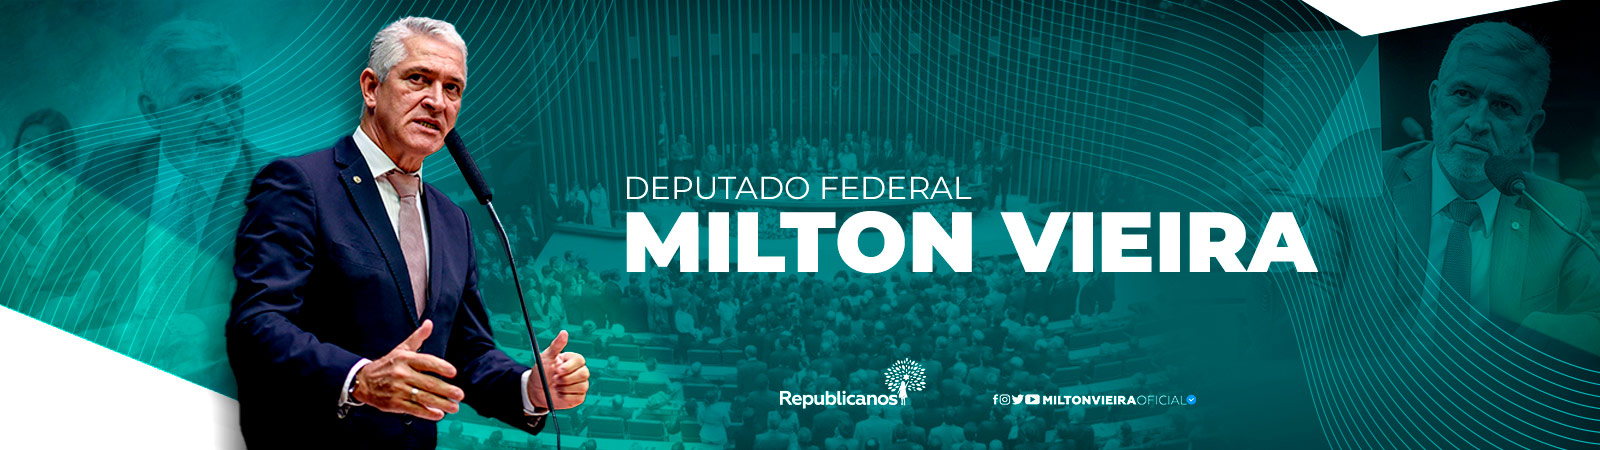 Dep. Federal Milton Vieira